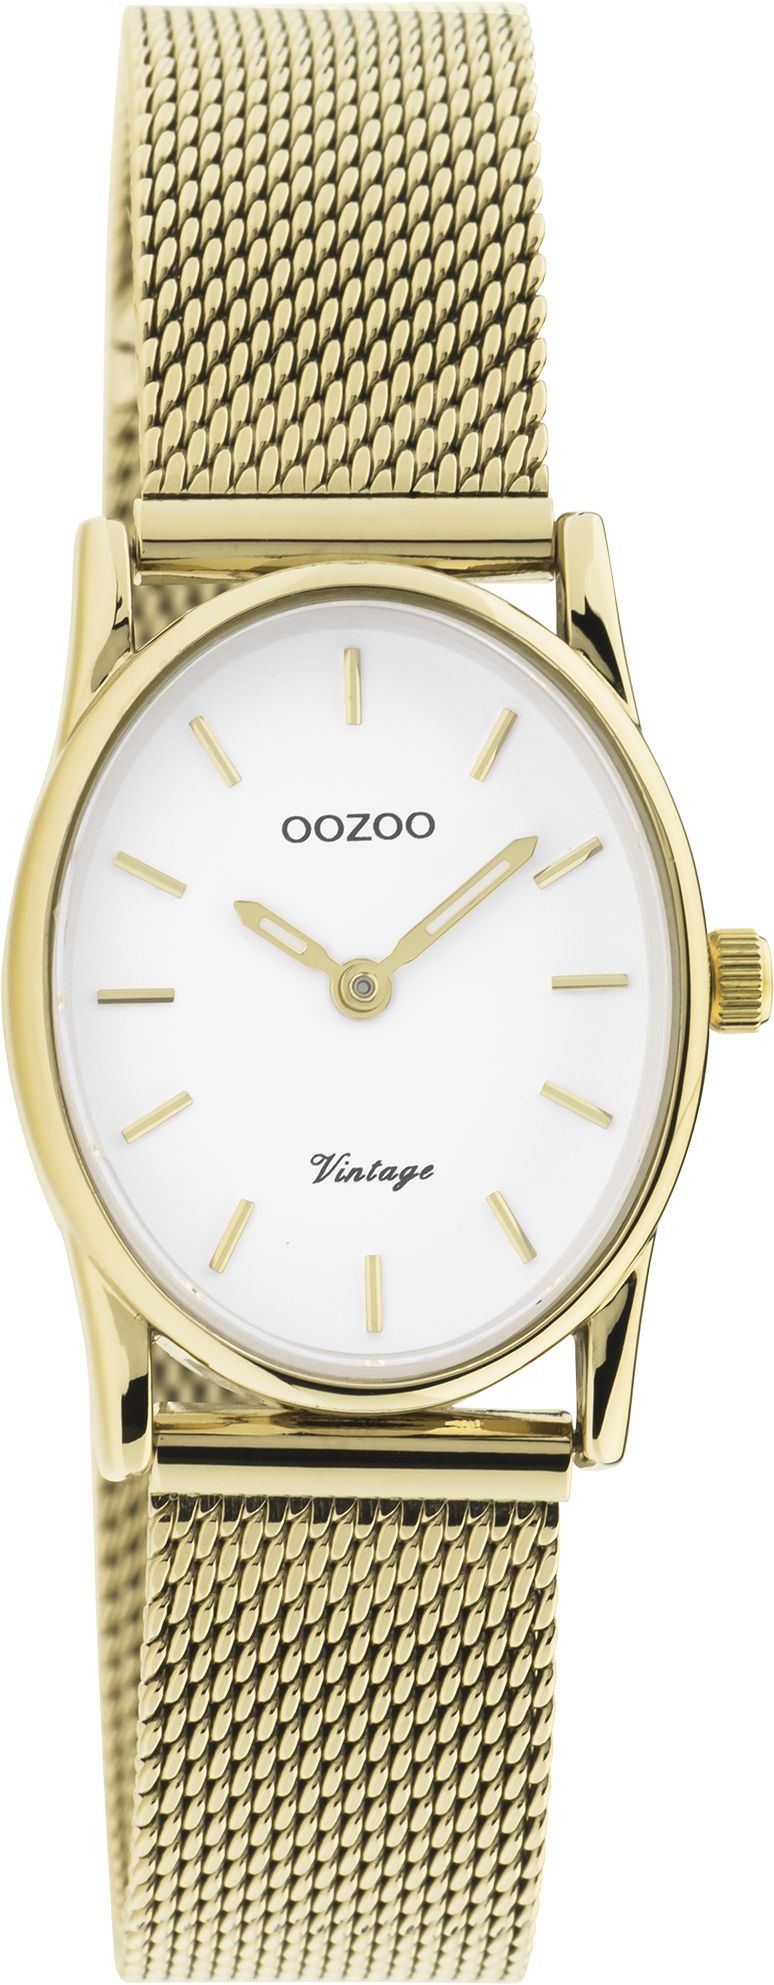 OOZOO Vintage C20258 σε χρυσό χρώμα